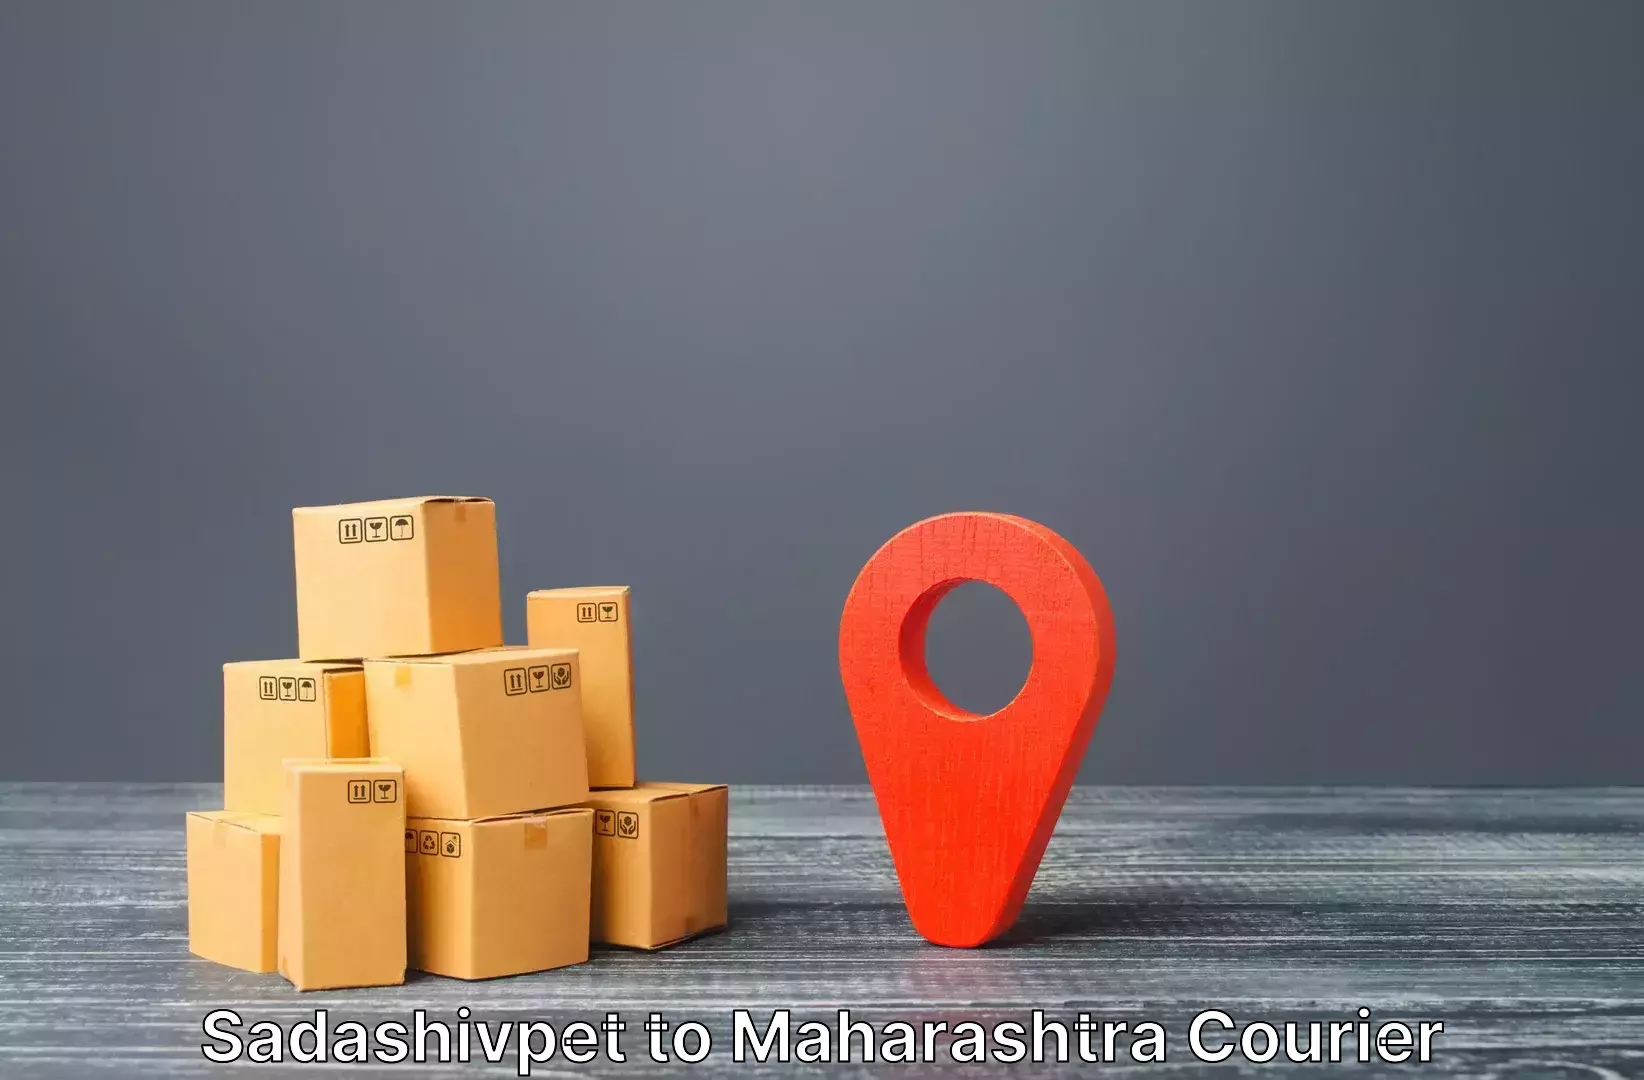 Luggage delivery optimization Sadashivpet to Maharashtra